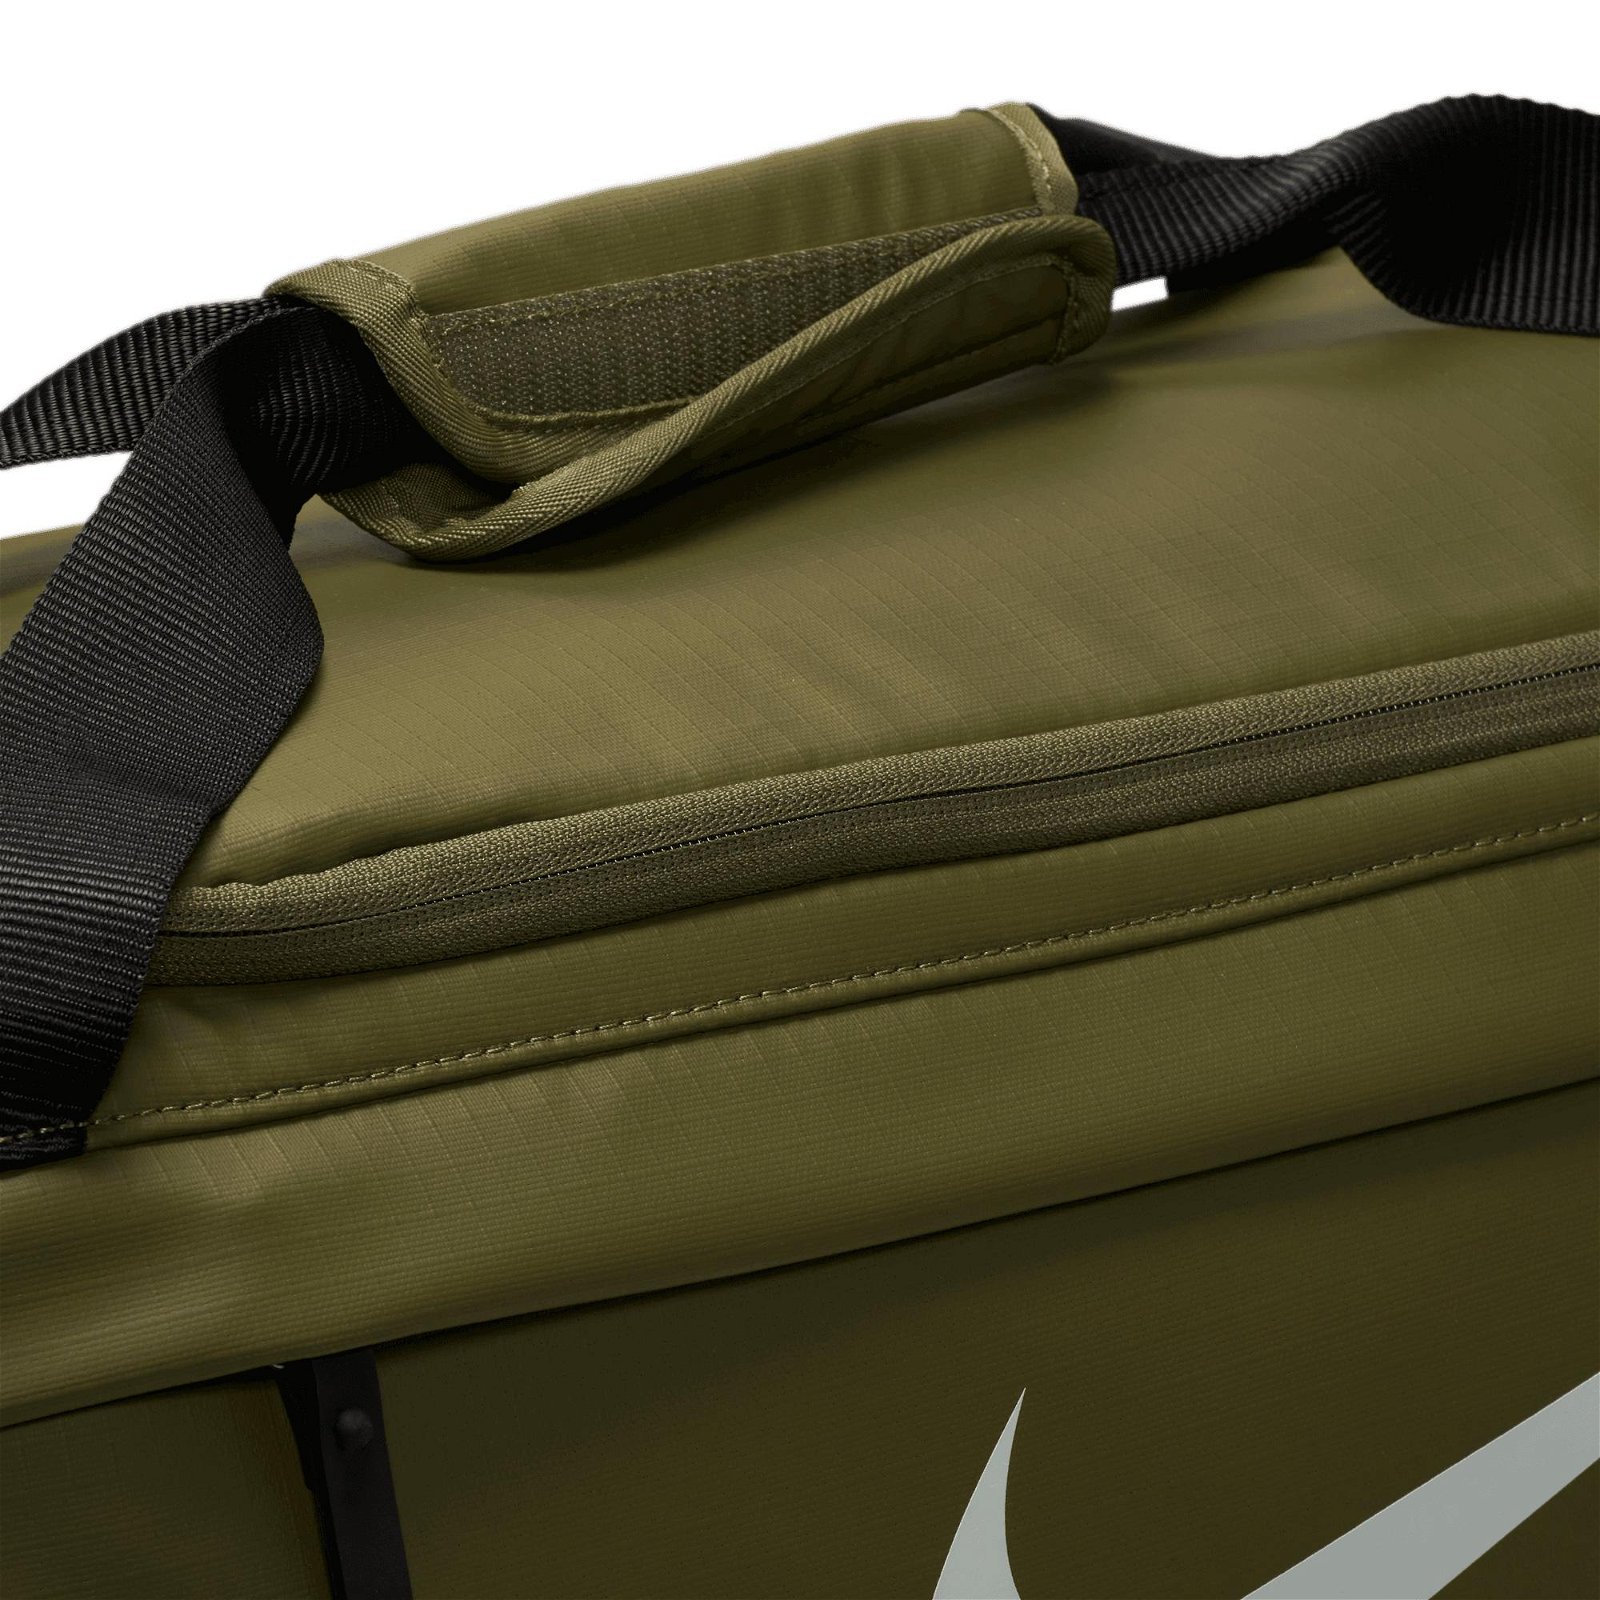 Nike Brasilia Duff Winterized 22 Unisex Haki Spor Çantası